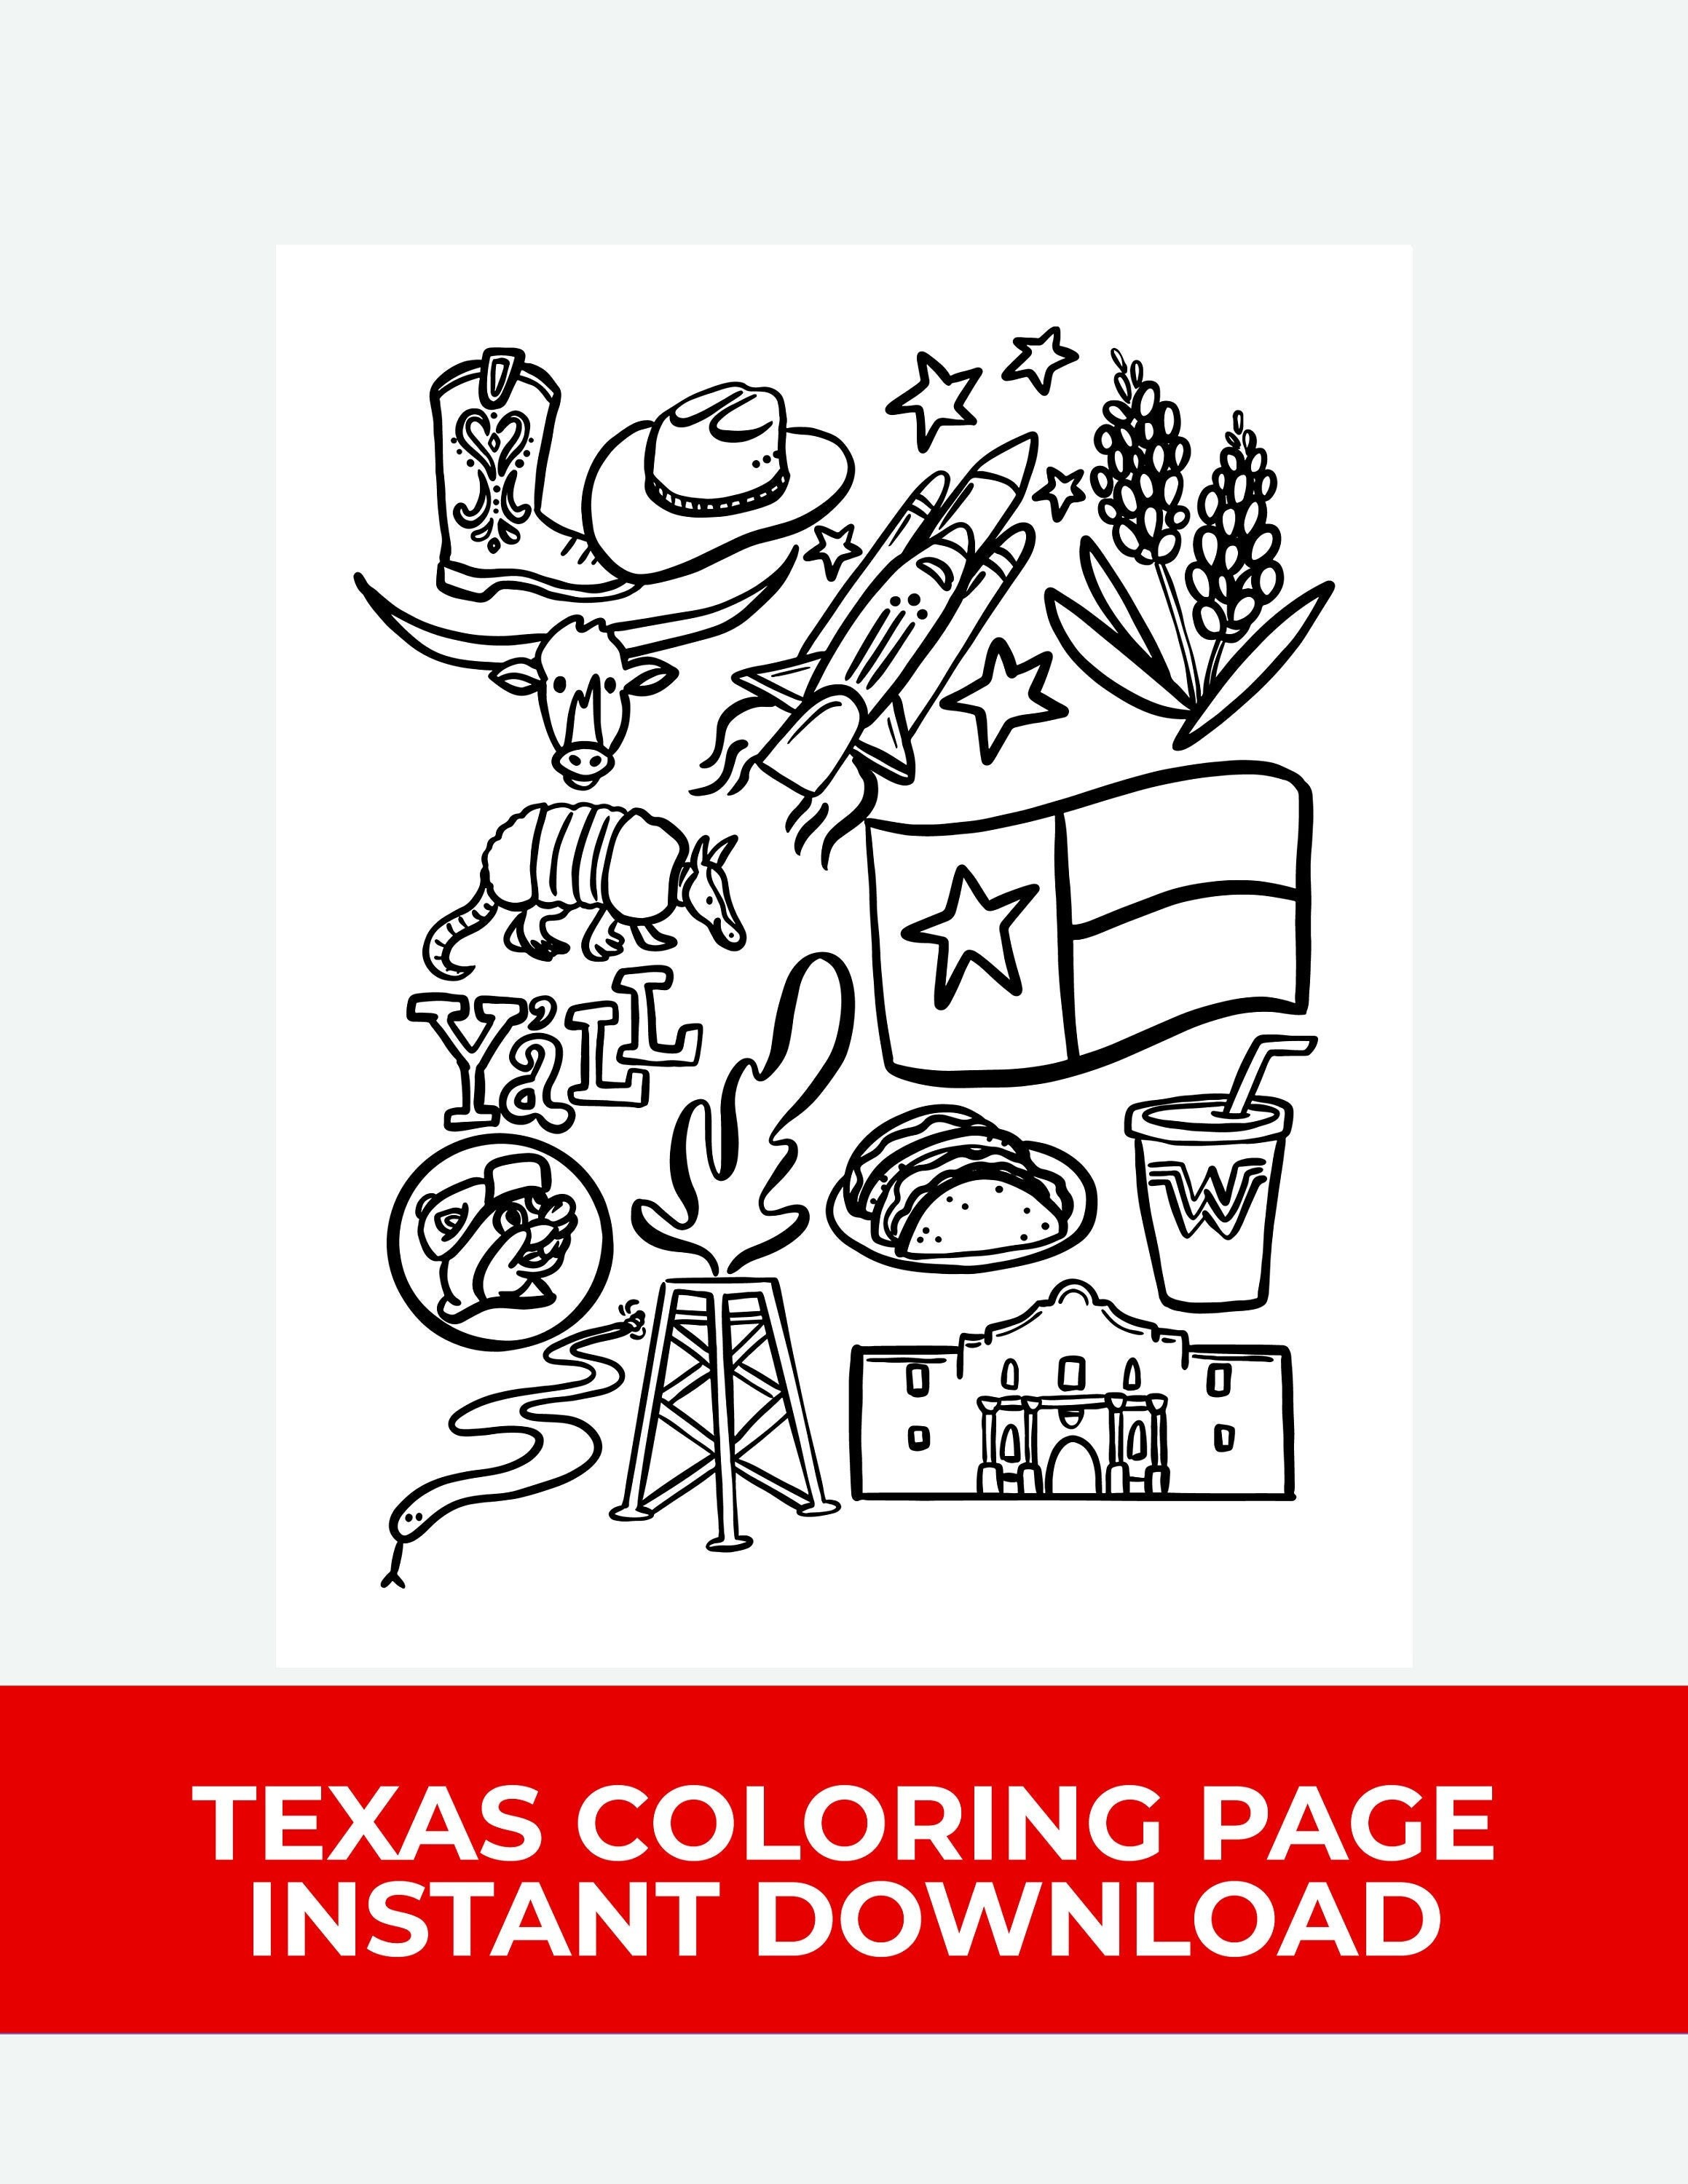 Texas coloring